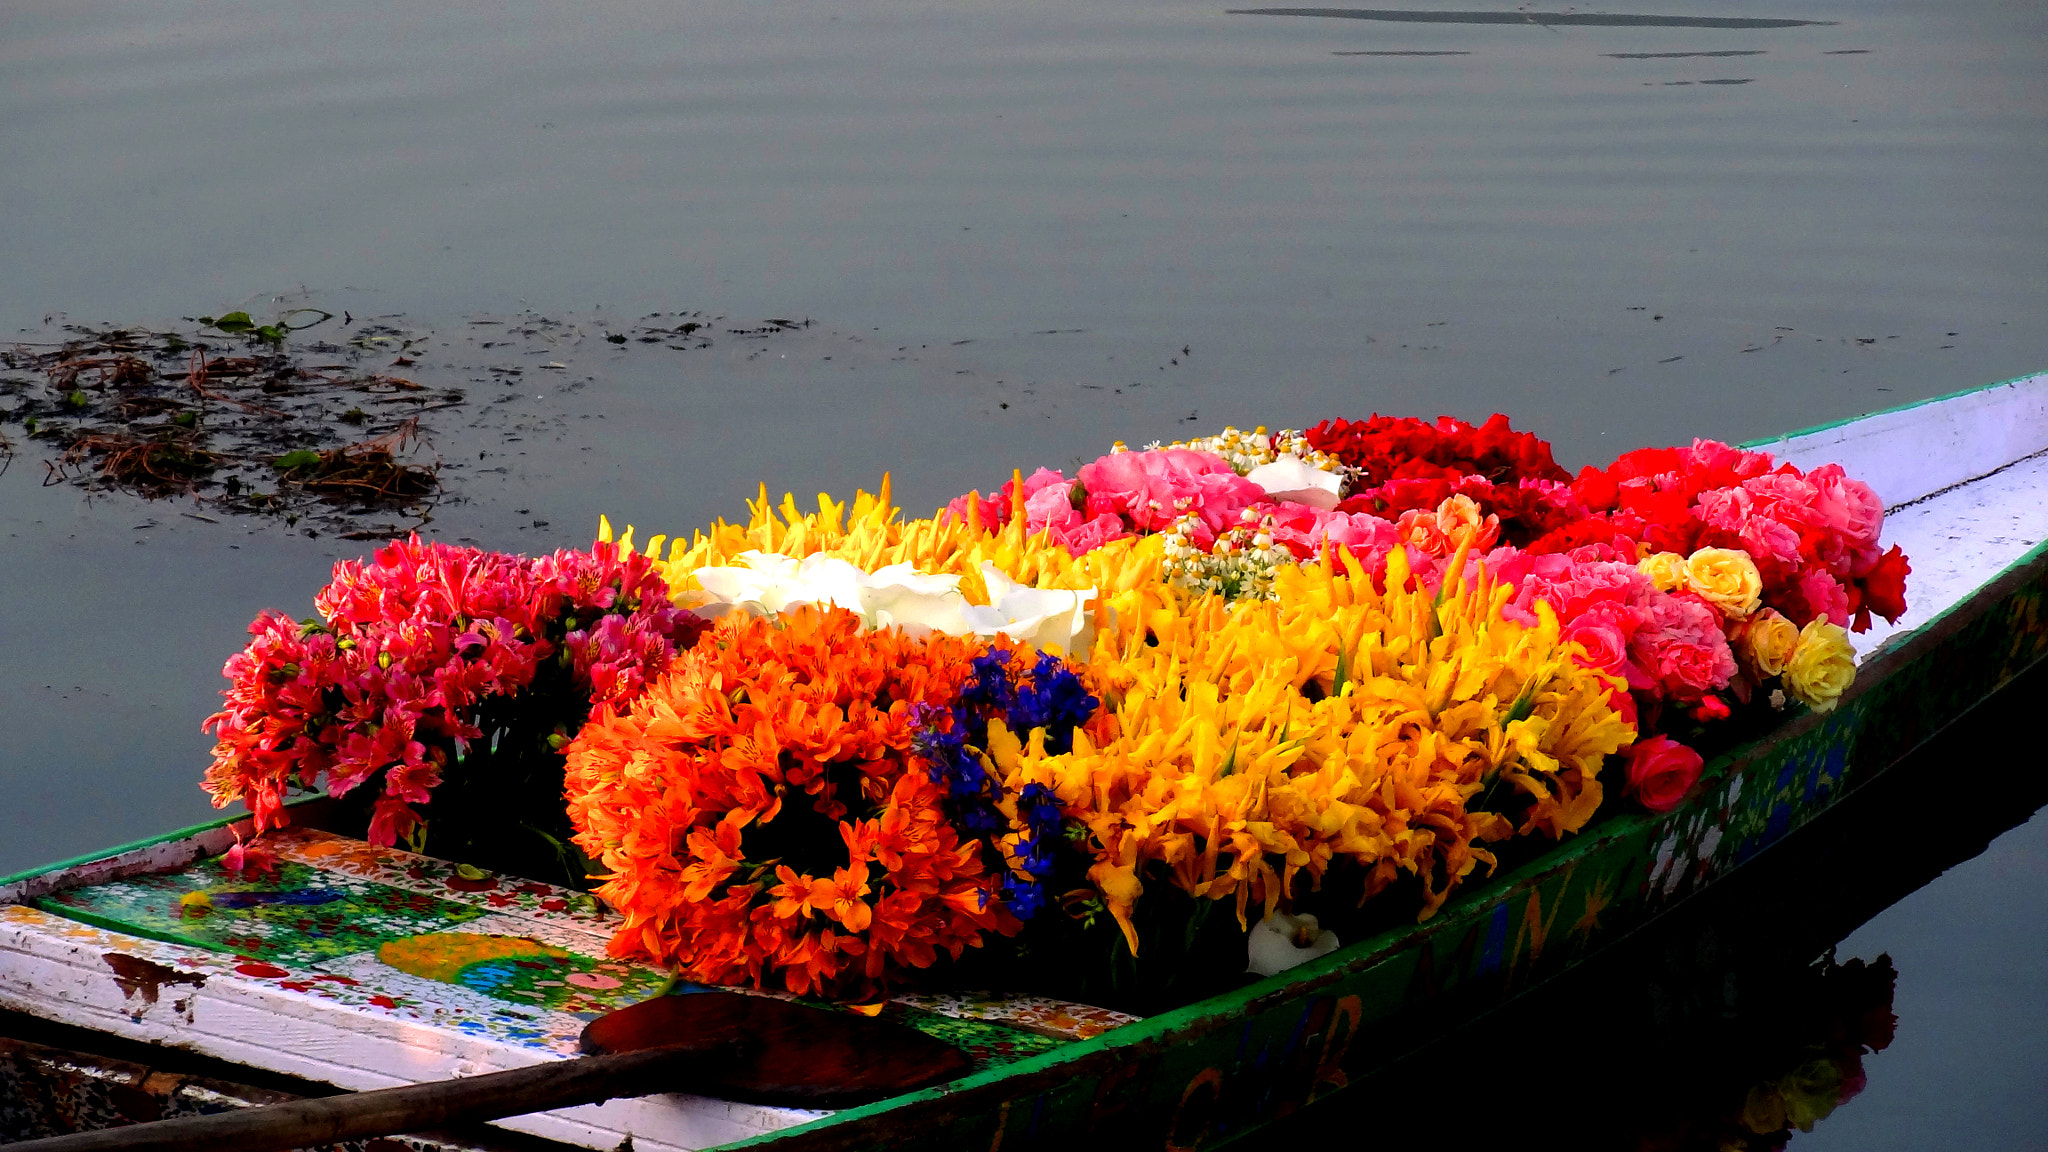 Sony Cyber-shot DSC-HX7V sample photo. Flowers on a boat photography